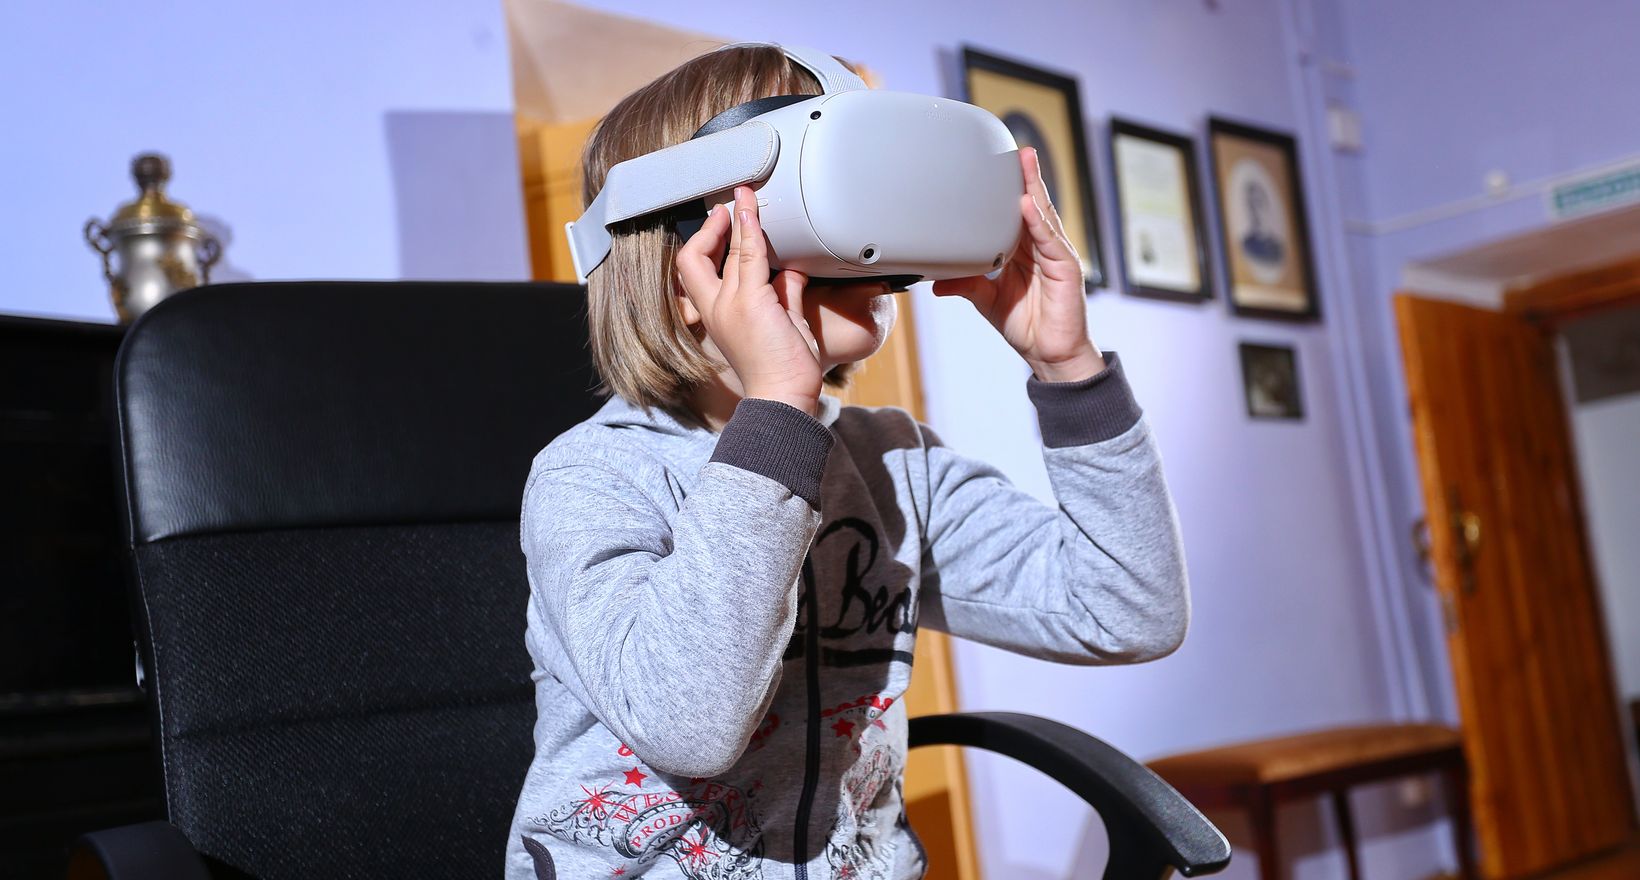 Аэроэкскурсия в VR-очках «Новый день 360. Купечество»